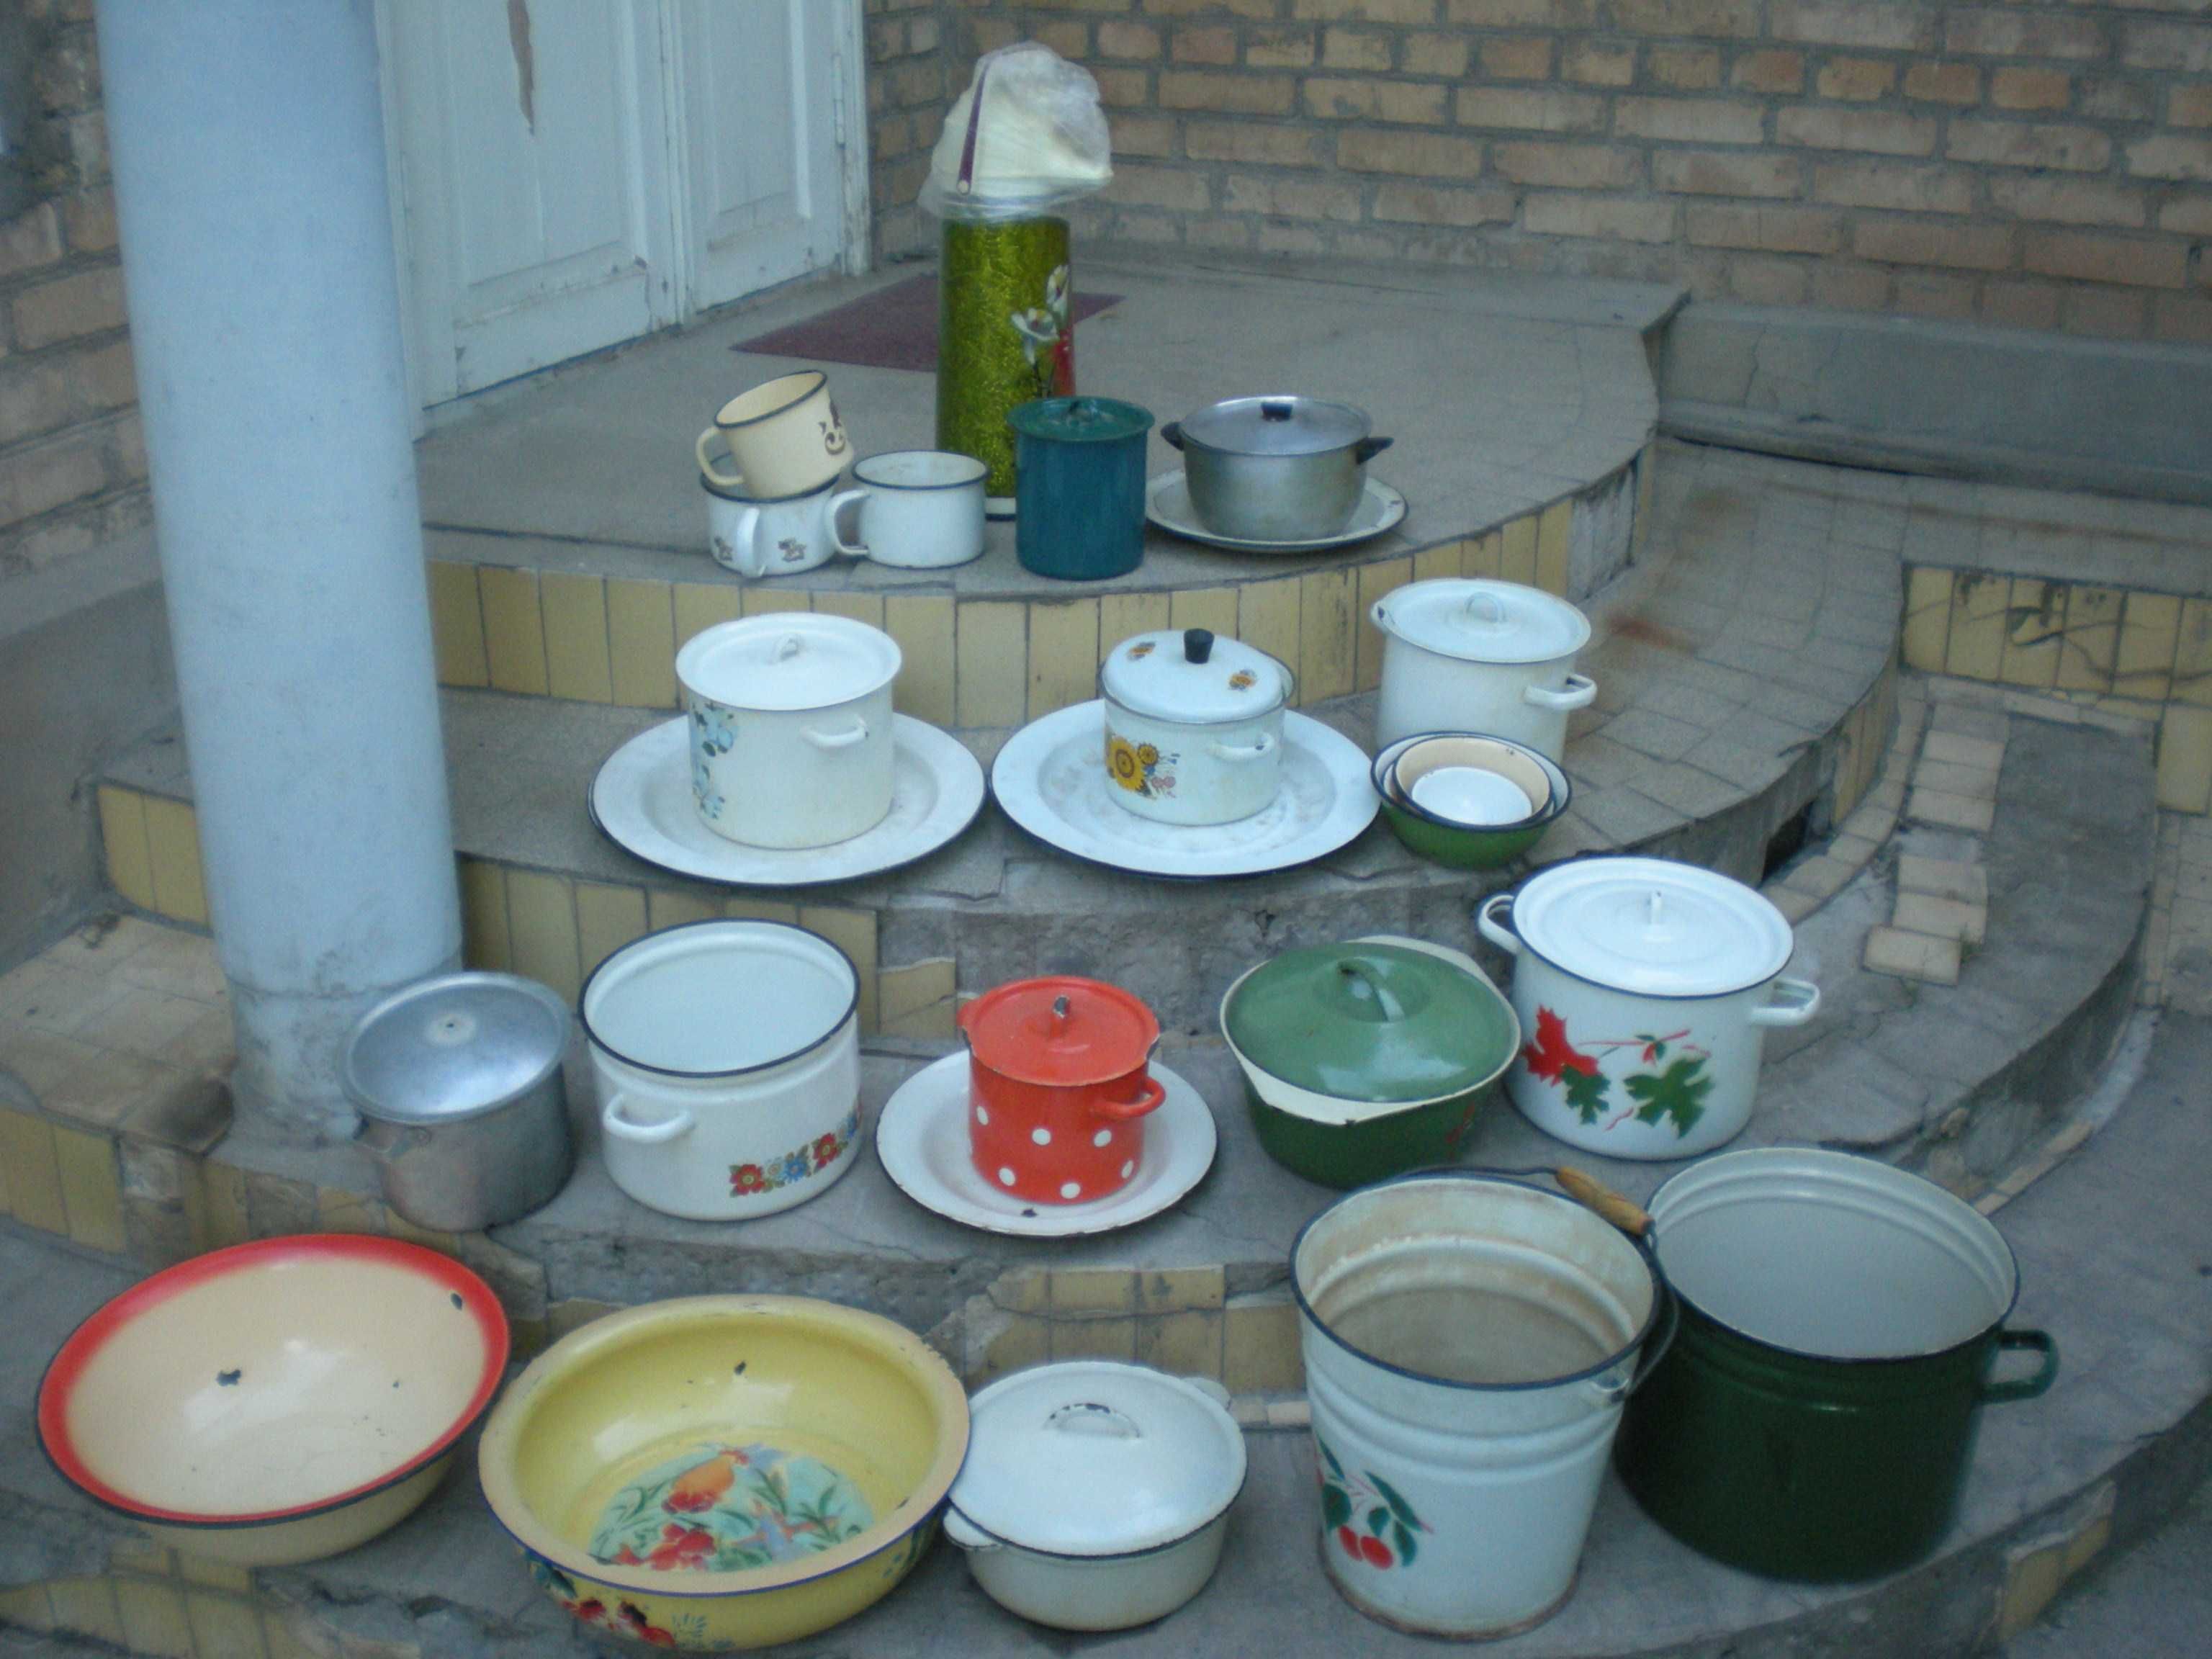 продается кухонная утварь советского периода